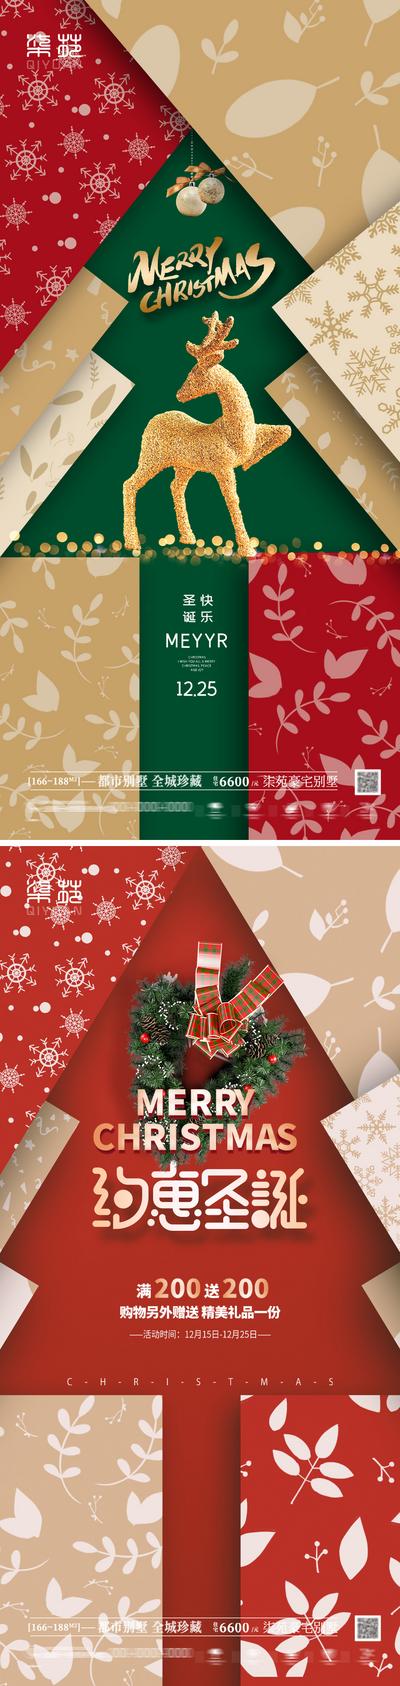 南门网 海报 房地产 公历节日 圣诞节 麋鹿 圣诞树 礼遇 活动 创意